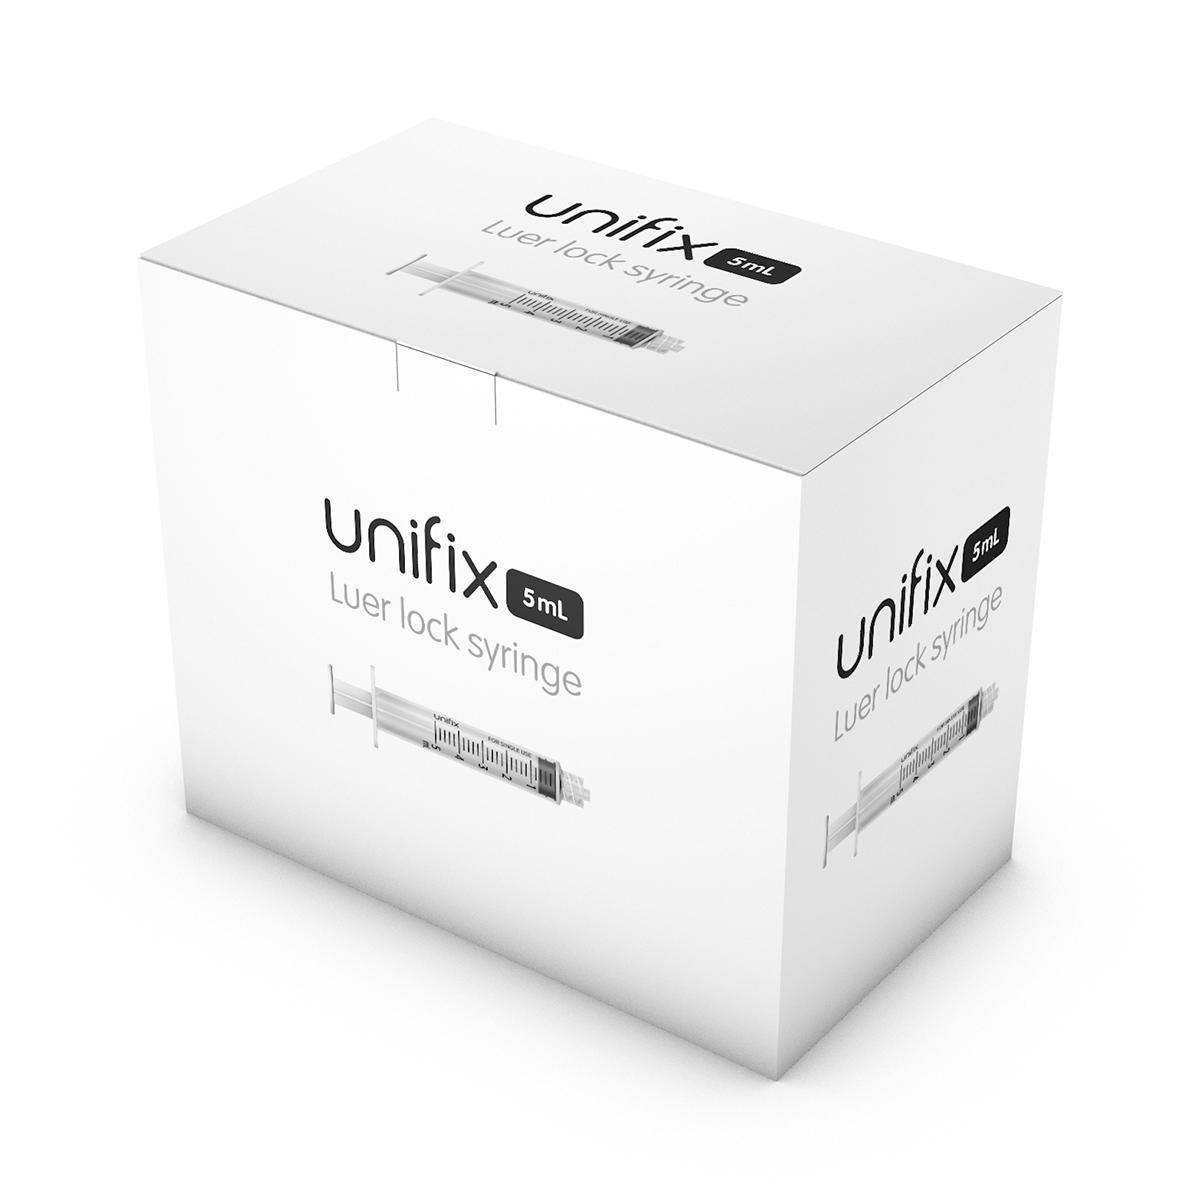 5ml Unifix Luer Lock Syringe - UKMEDI